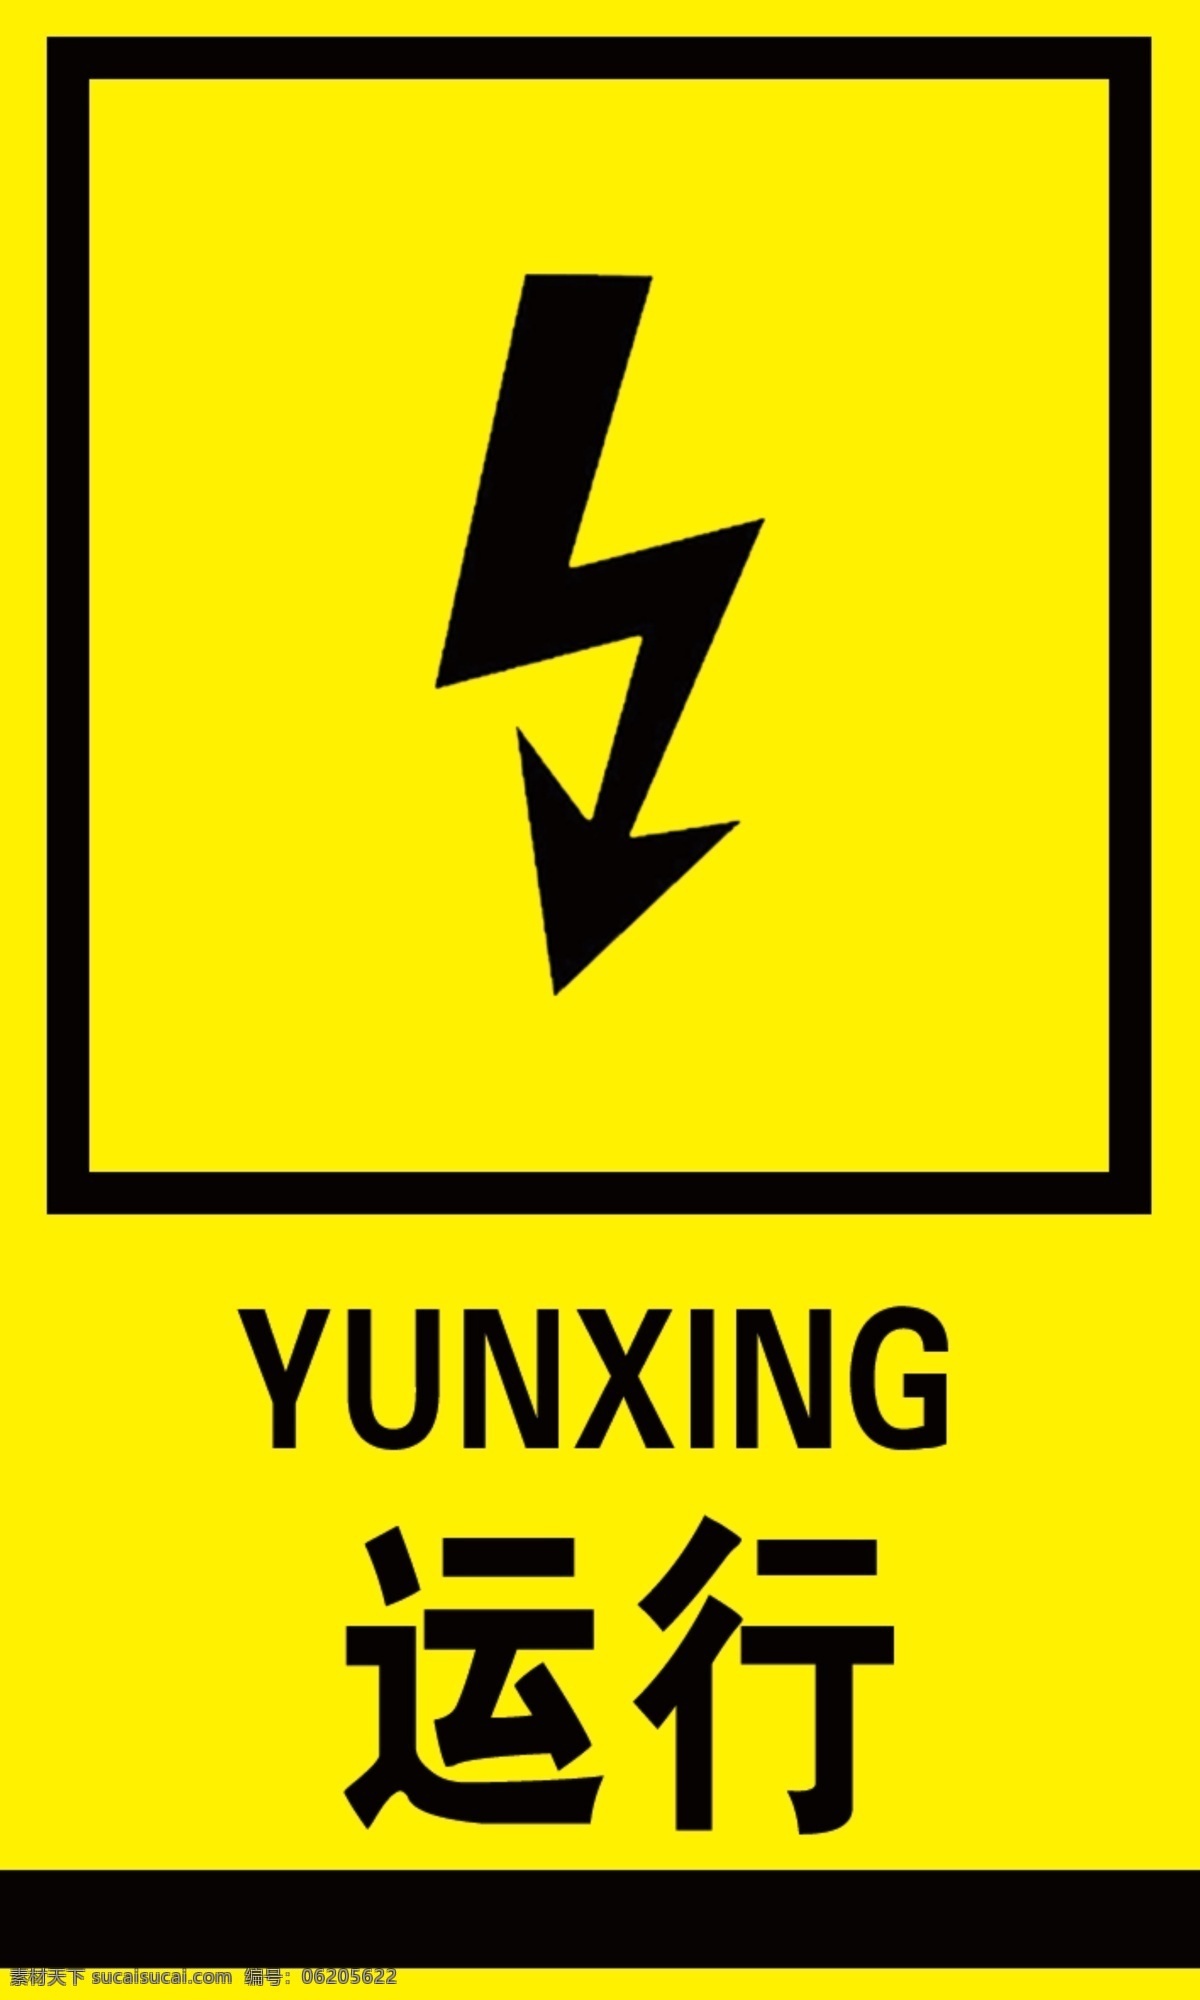 高压 运行 警示 标识 黄色 黑字 大气 室外广告设计